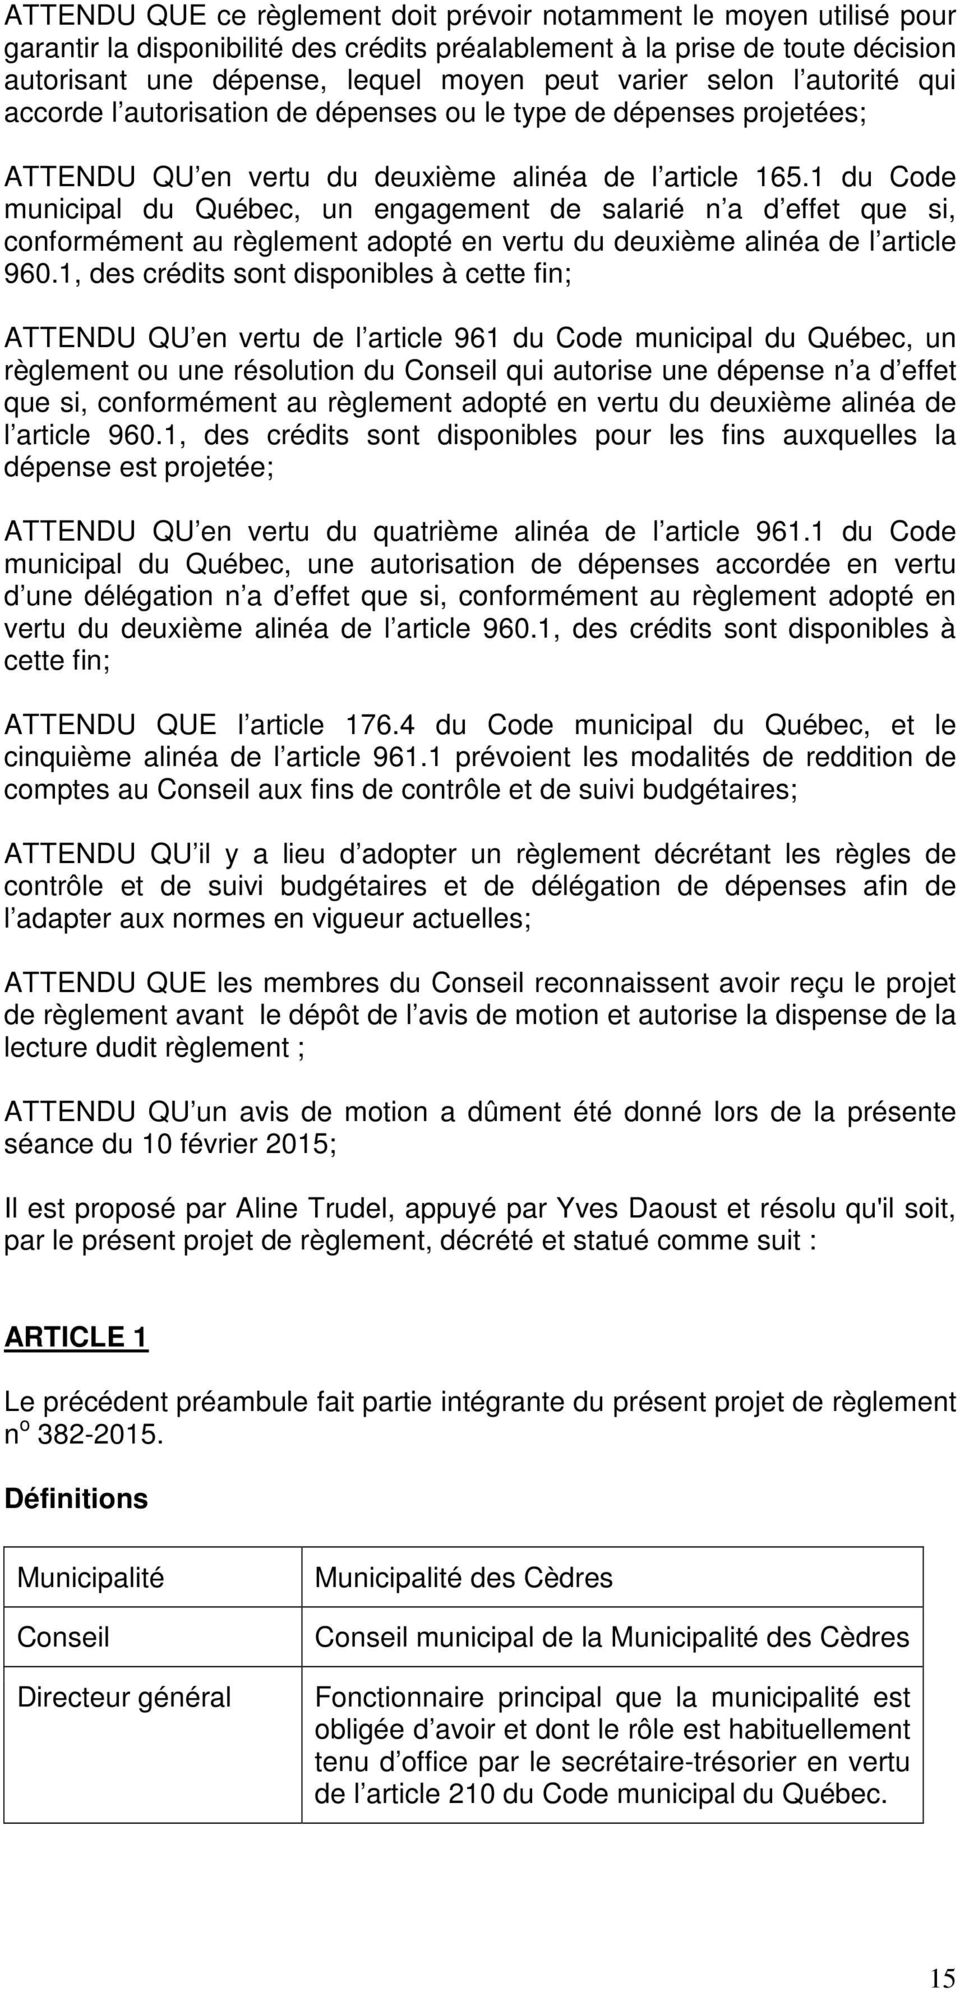 1 du Code municipal du Québec, un engagement de salarié n a d effet que si, conformément au règlement adopté en vertu du deuxième alinéa de l article 960.